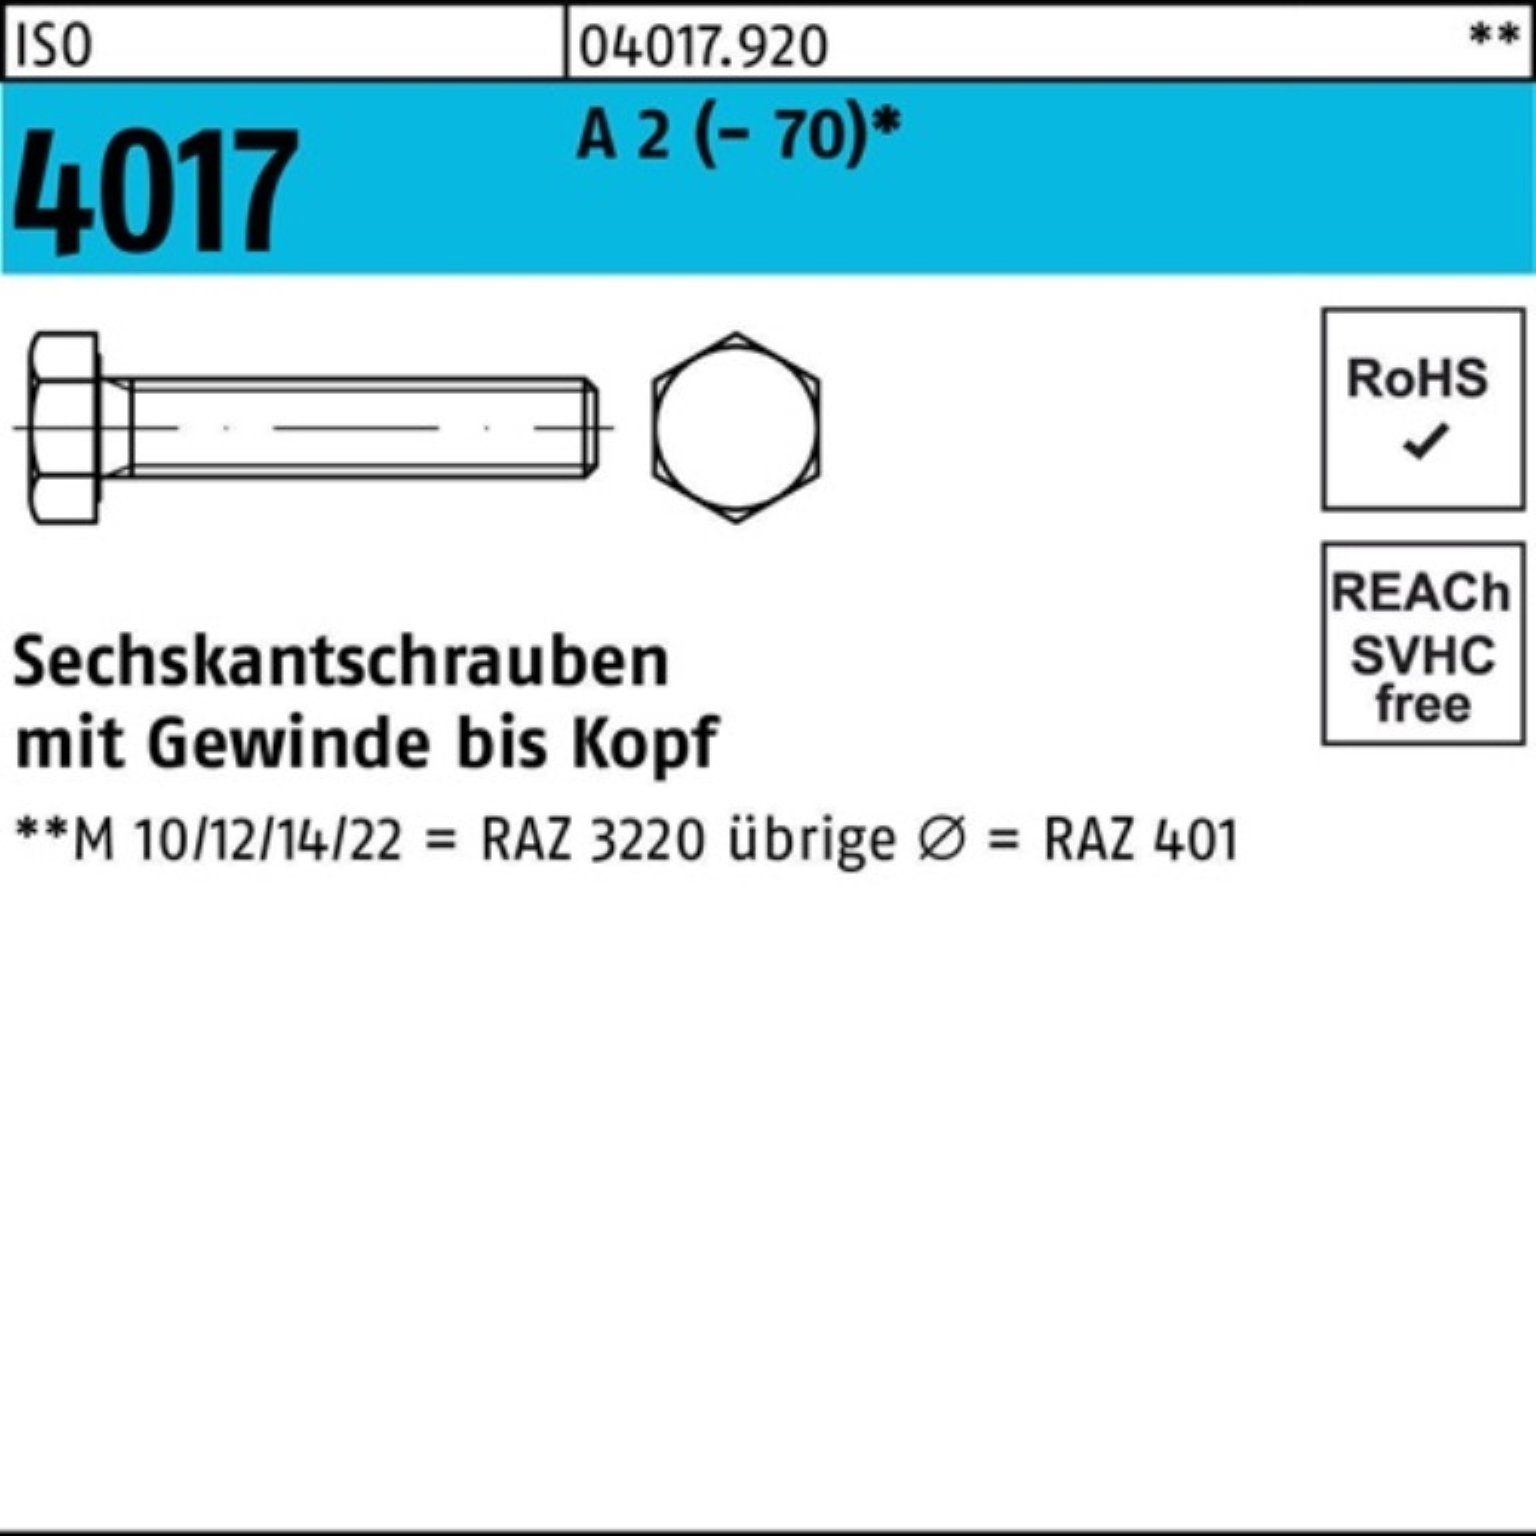 Bufab Sechskantschraube 100er Pack Sechskantschraube ISO 4017 VG M20x 170 A 2 (70) 10 Stück